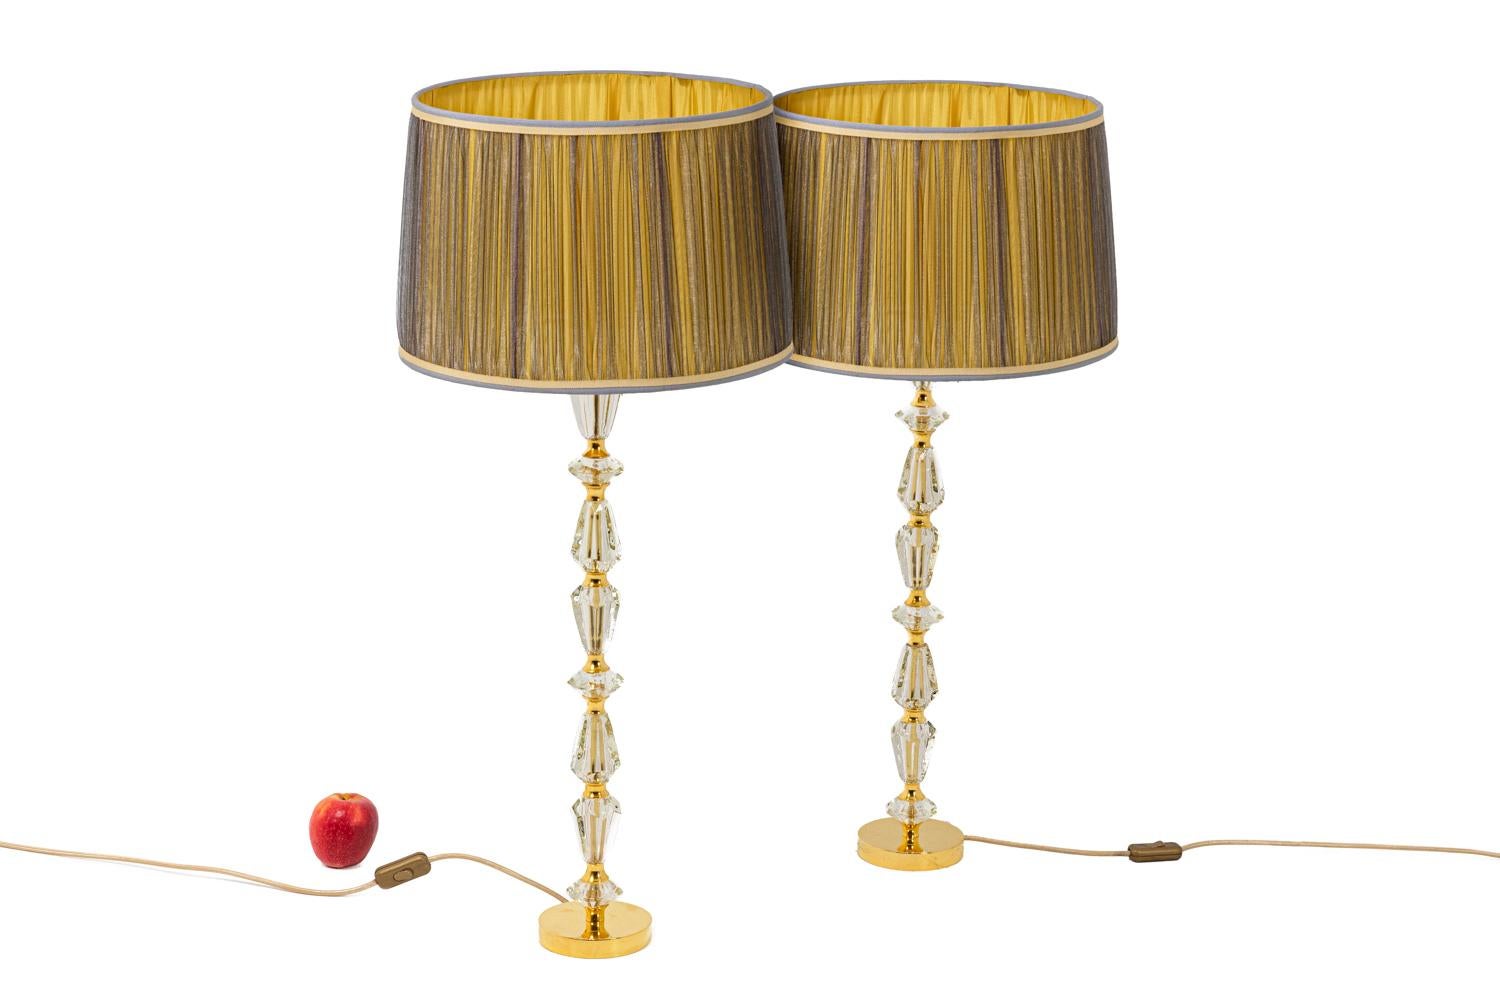 Paar zylindrische Lampen, bestehend aus einer Reihe von konischen Elementen aus facettiertem Glas, die durch Ringe aus vergoldetem Messing getrennt sind. Der Rahmen steht auf einem runden Sockel aus vergoldeter Bronze.

Französisches Werk aus den